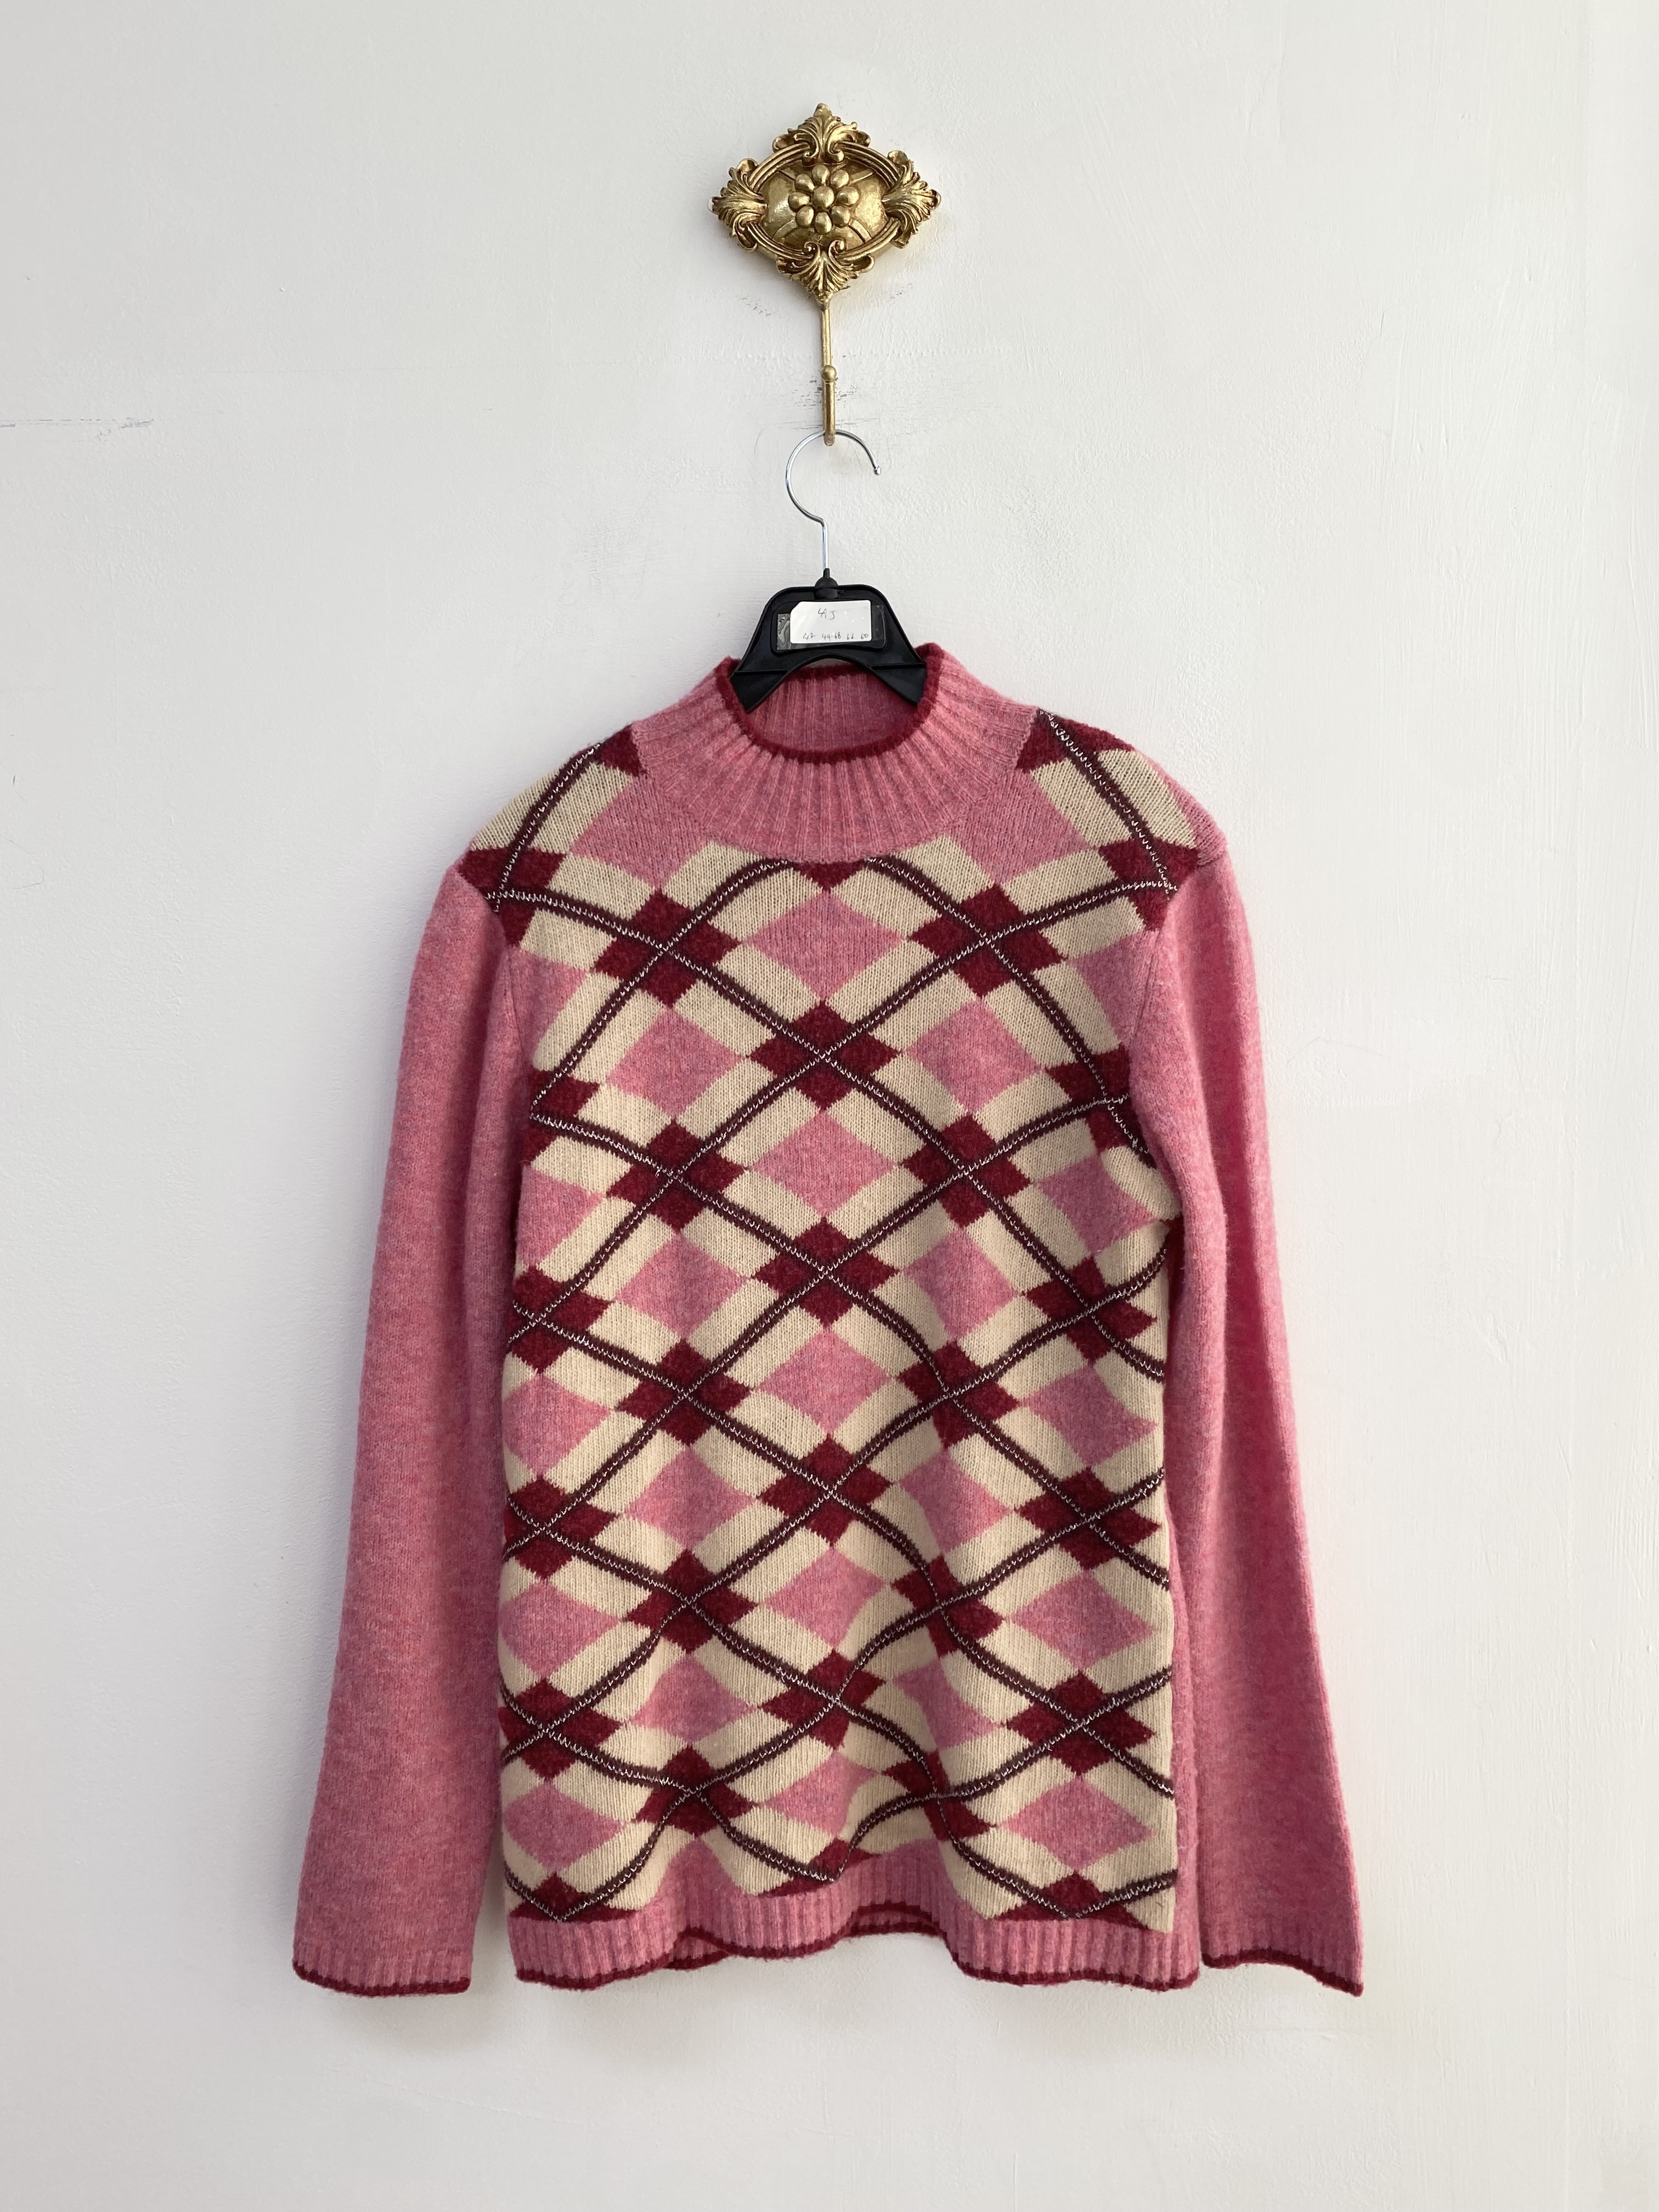 Pink glittery argyle pattern wool angora knit